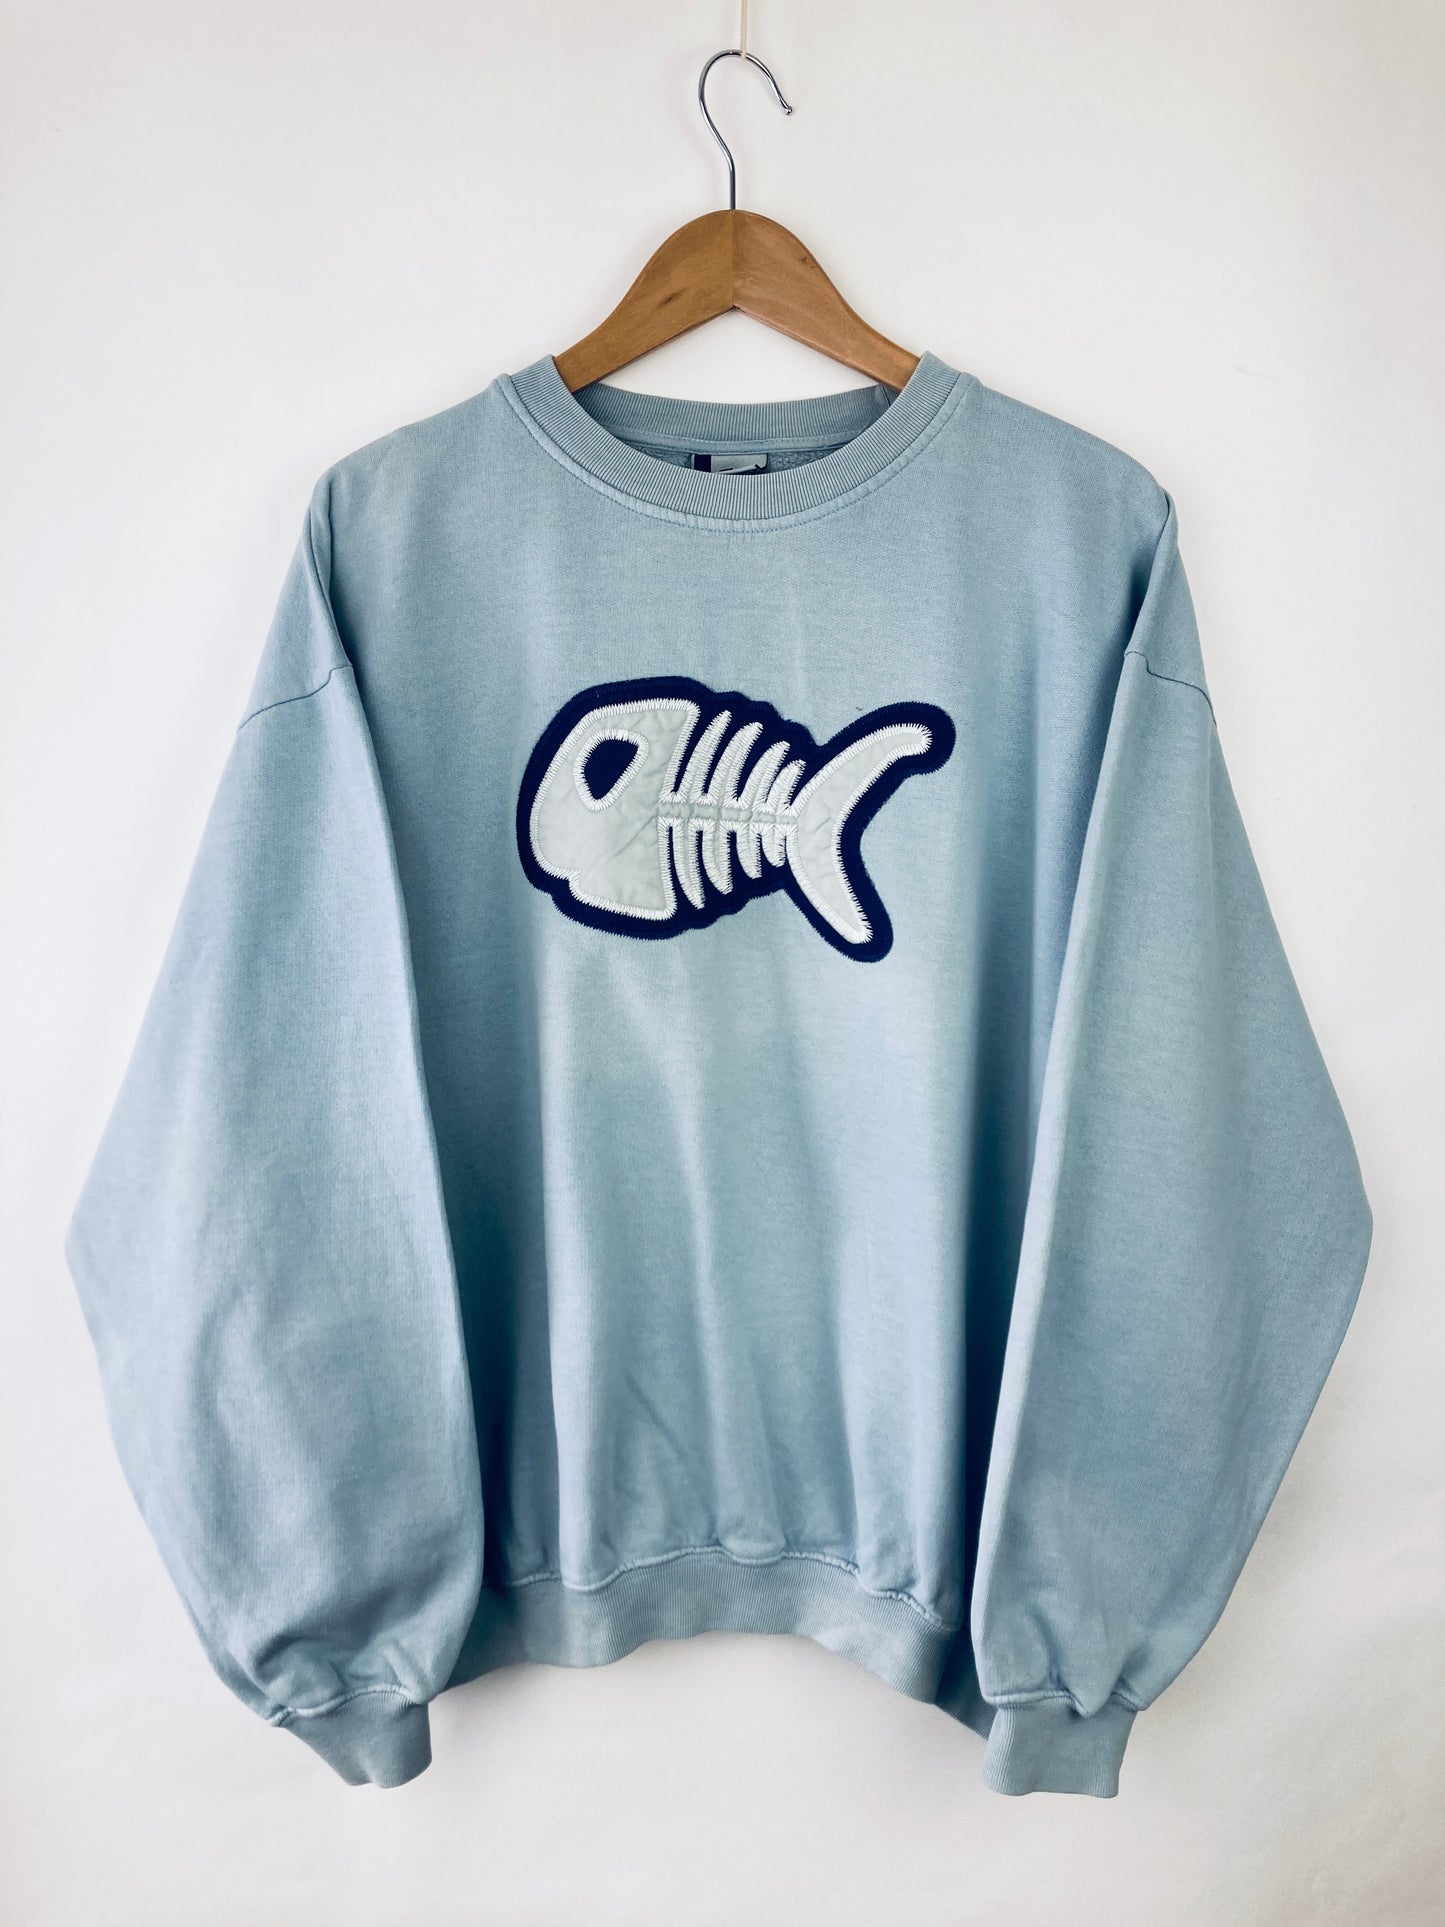 Fishbone Sweater (S)